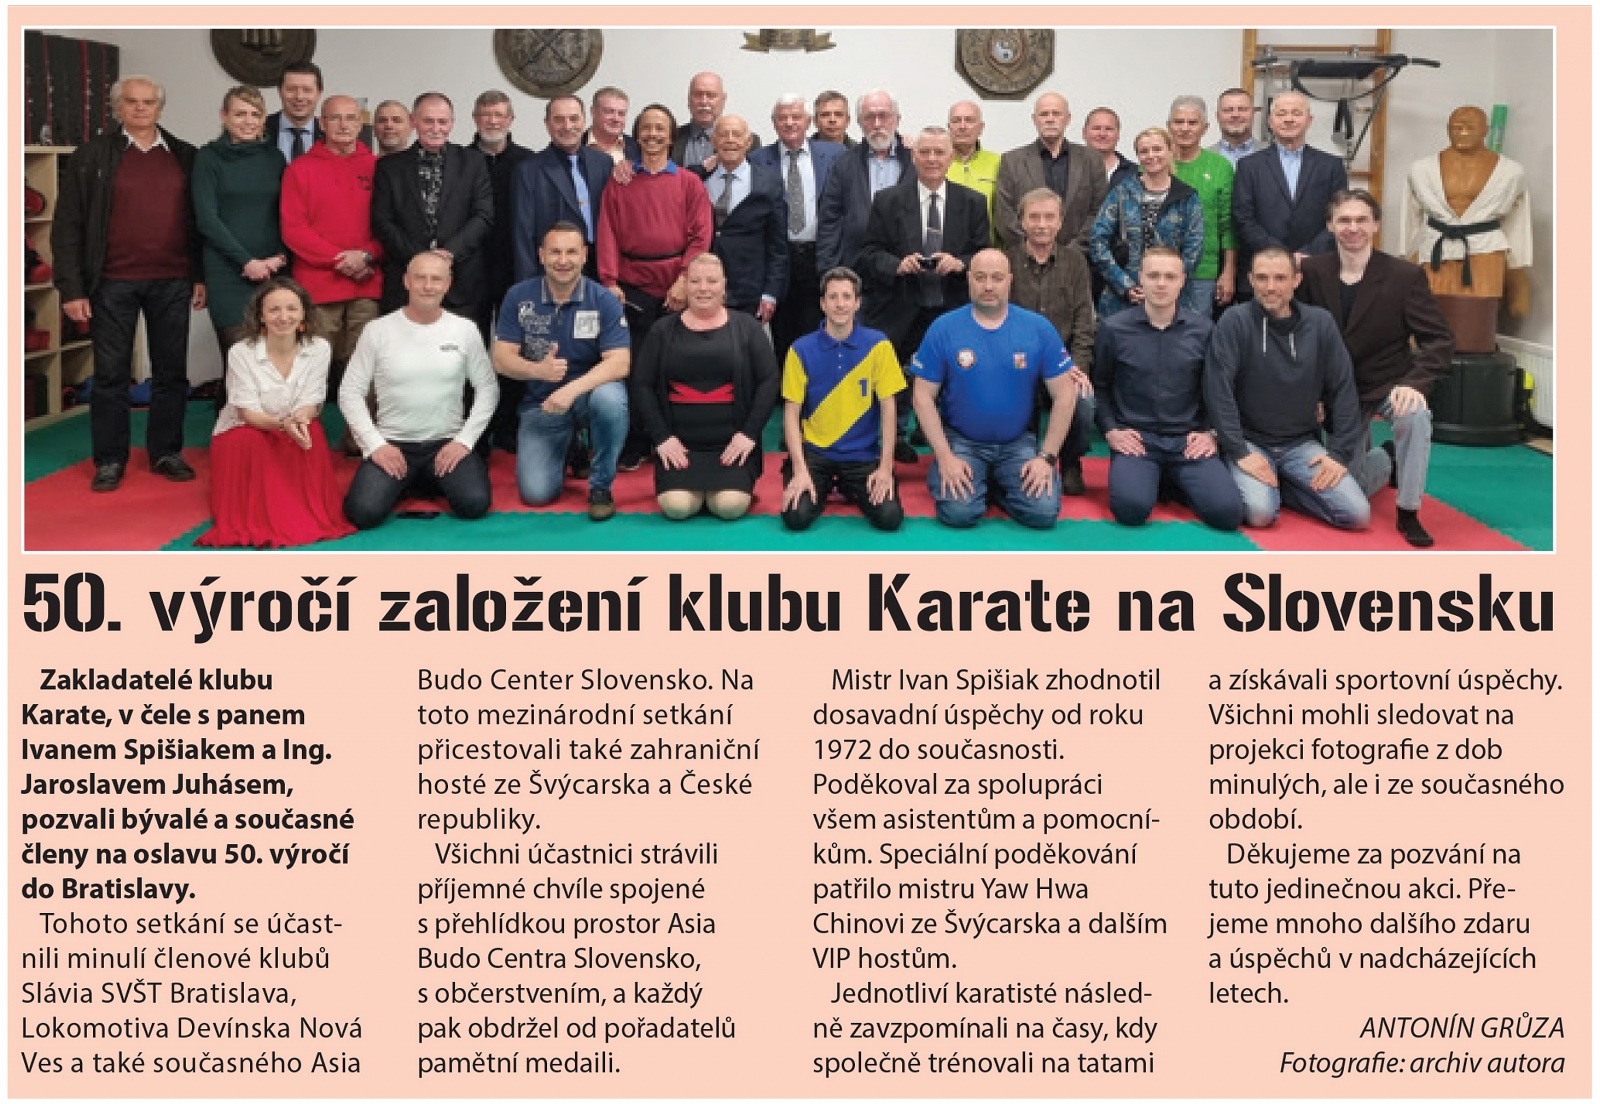 50. výročí klubu karate v Bratislavě